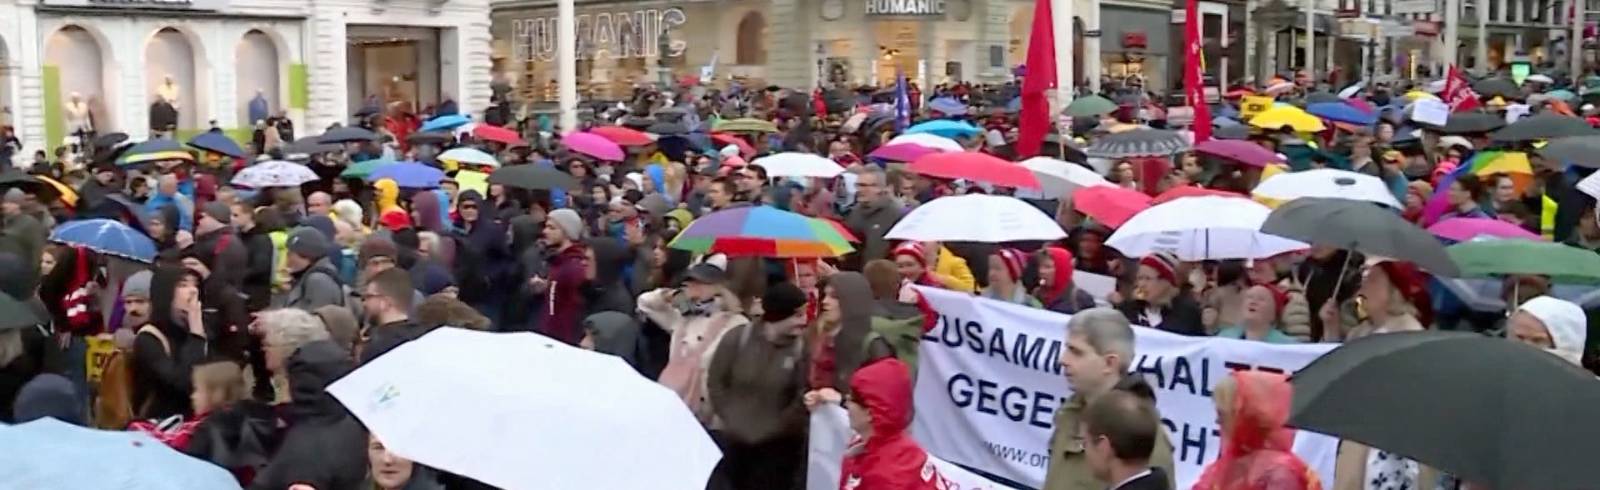 Bezirksflash: Hunderte bei Demo für Demokratie